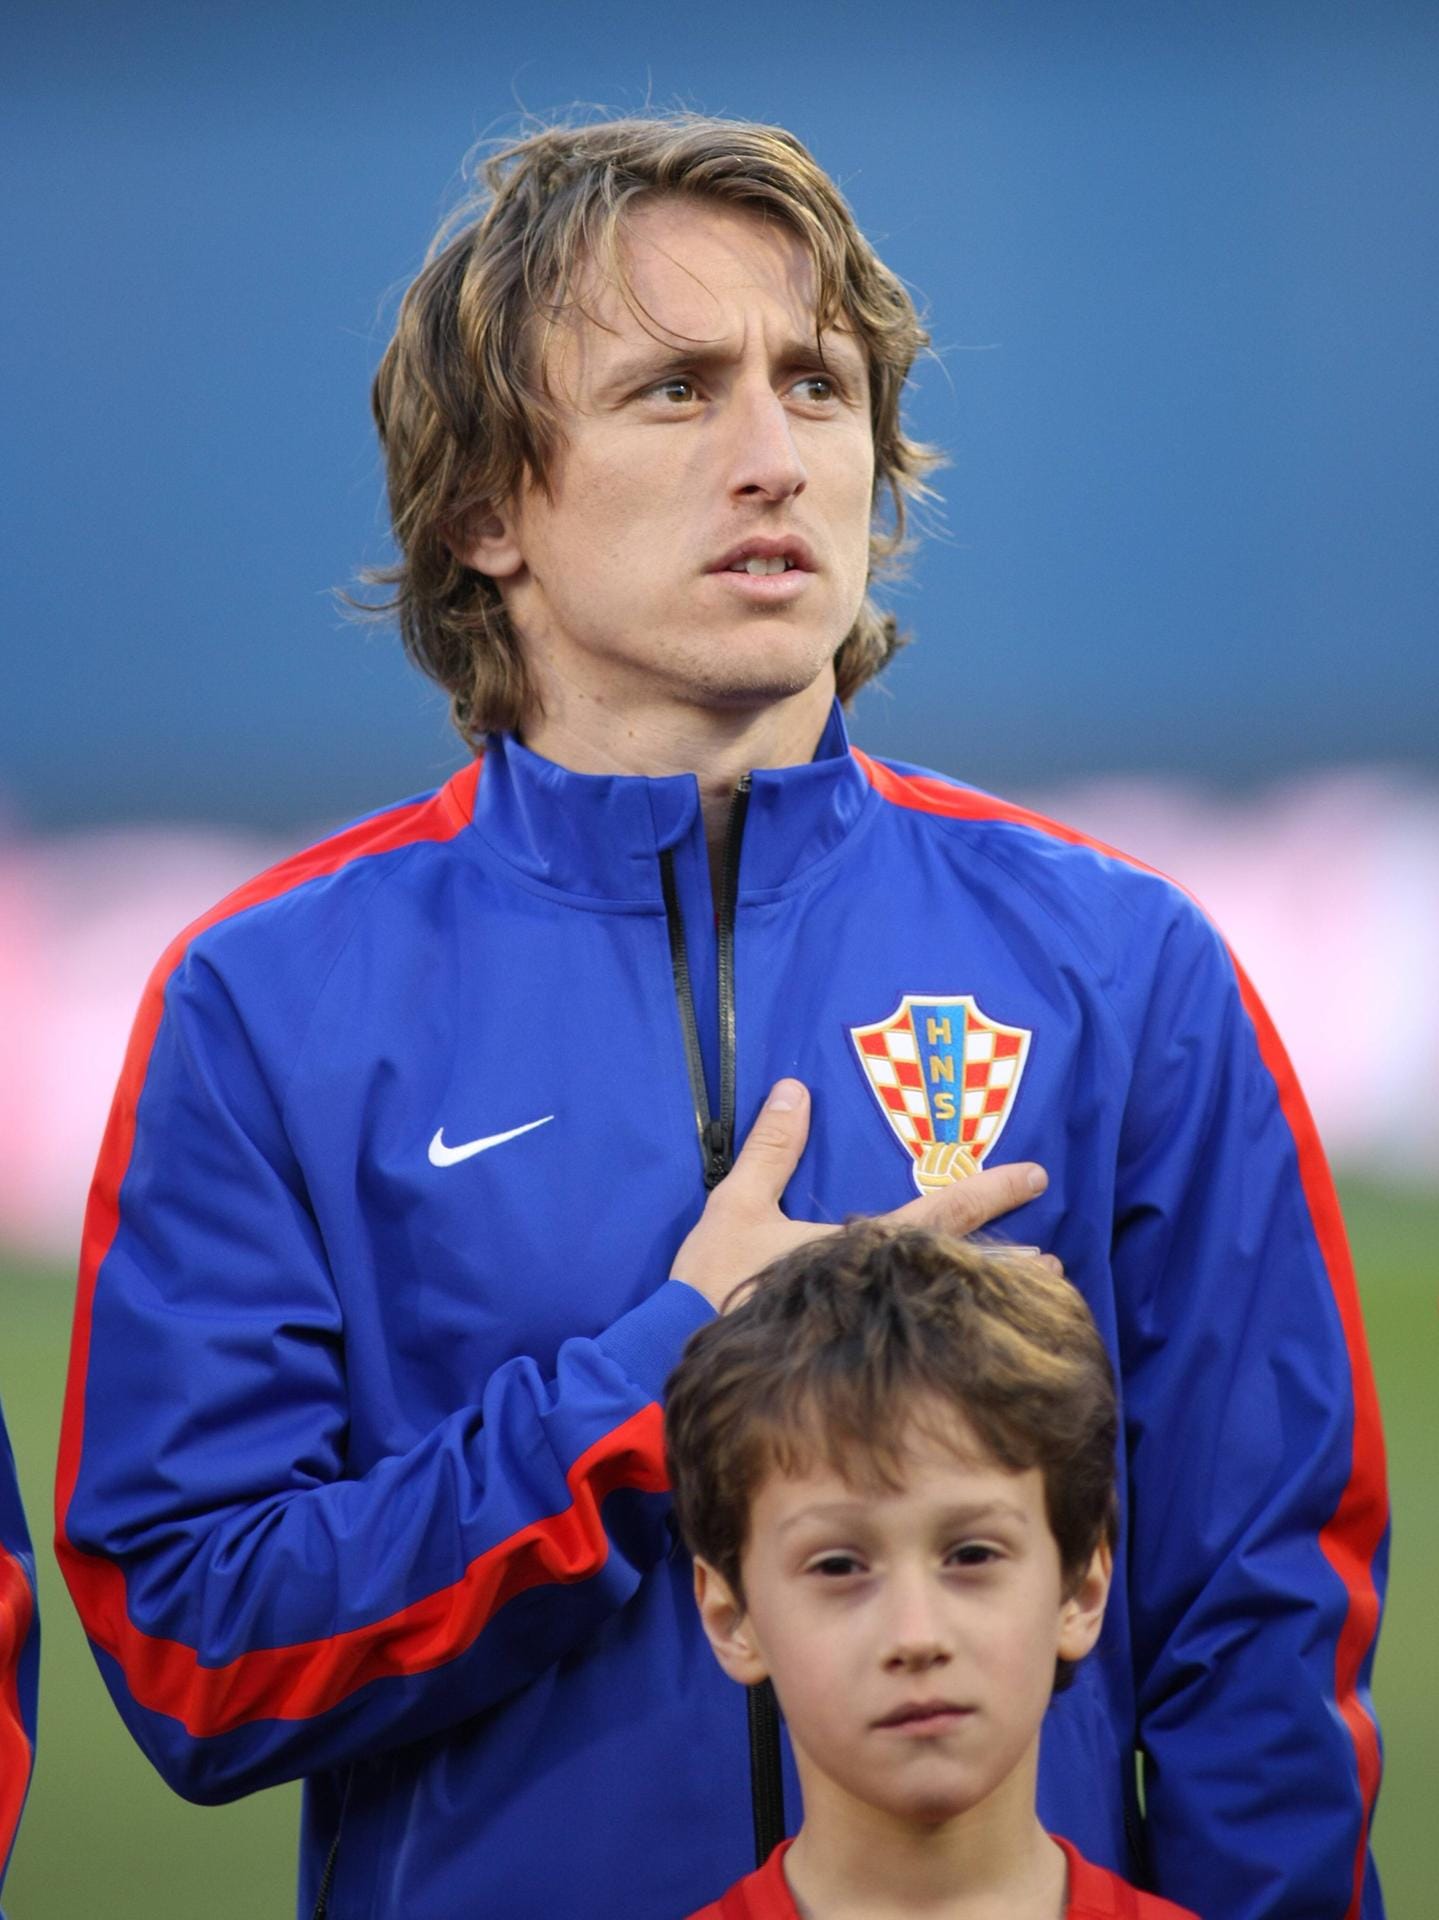 Luka Modric von Real Madrid ist der Denker und Lenker im Nationalteam der Kroaten. Das Spiel der Südosteuropäer steht und fällt mit den Ideen des 30-Jährigen.